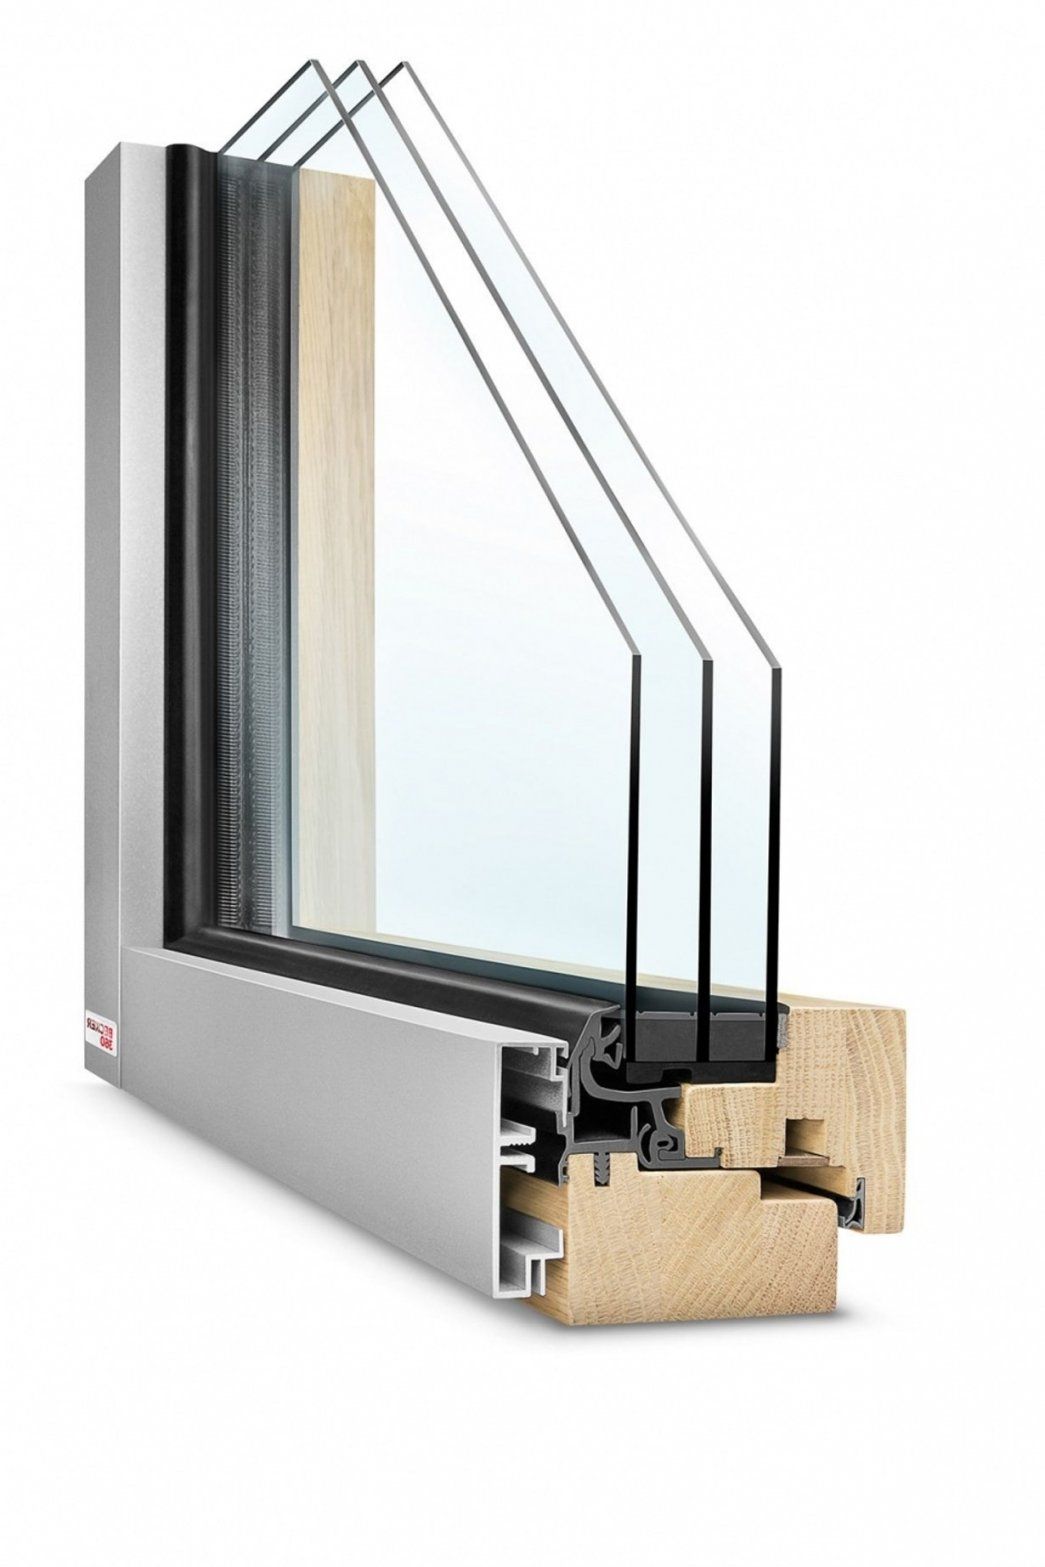 Holz Alu Fenster Nachteile  Die Schönsten Einrichtungsideen von Holz Alu Fenster Hersteller Vergleich Bild